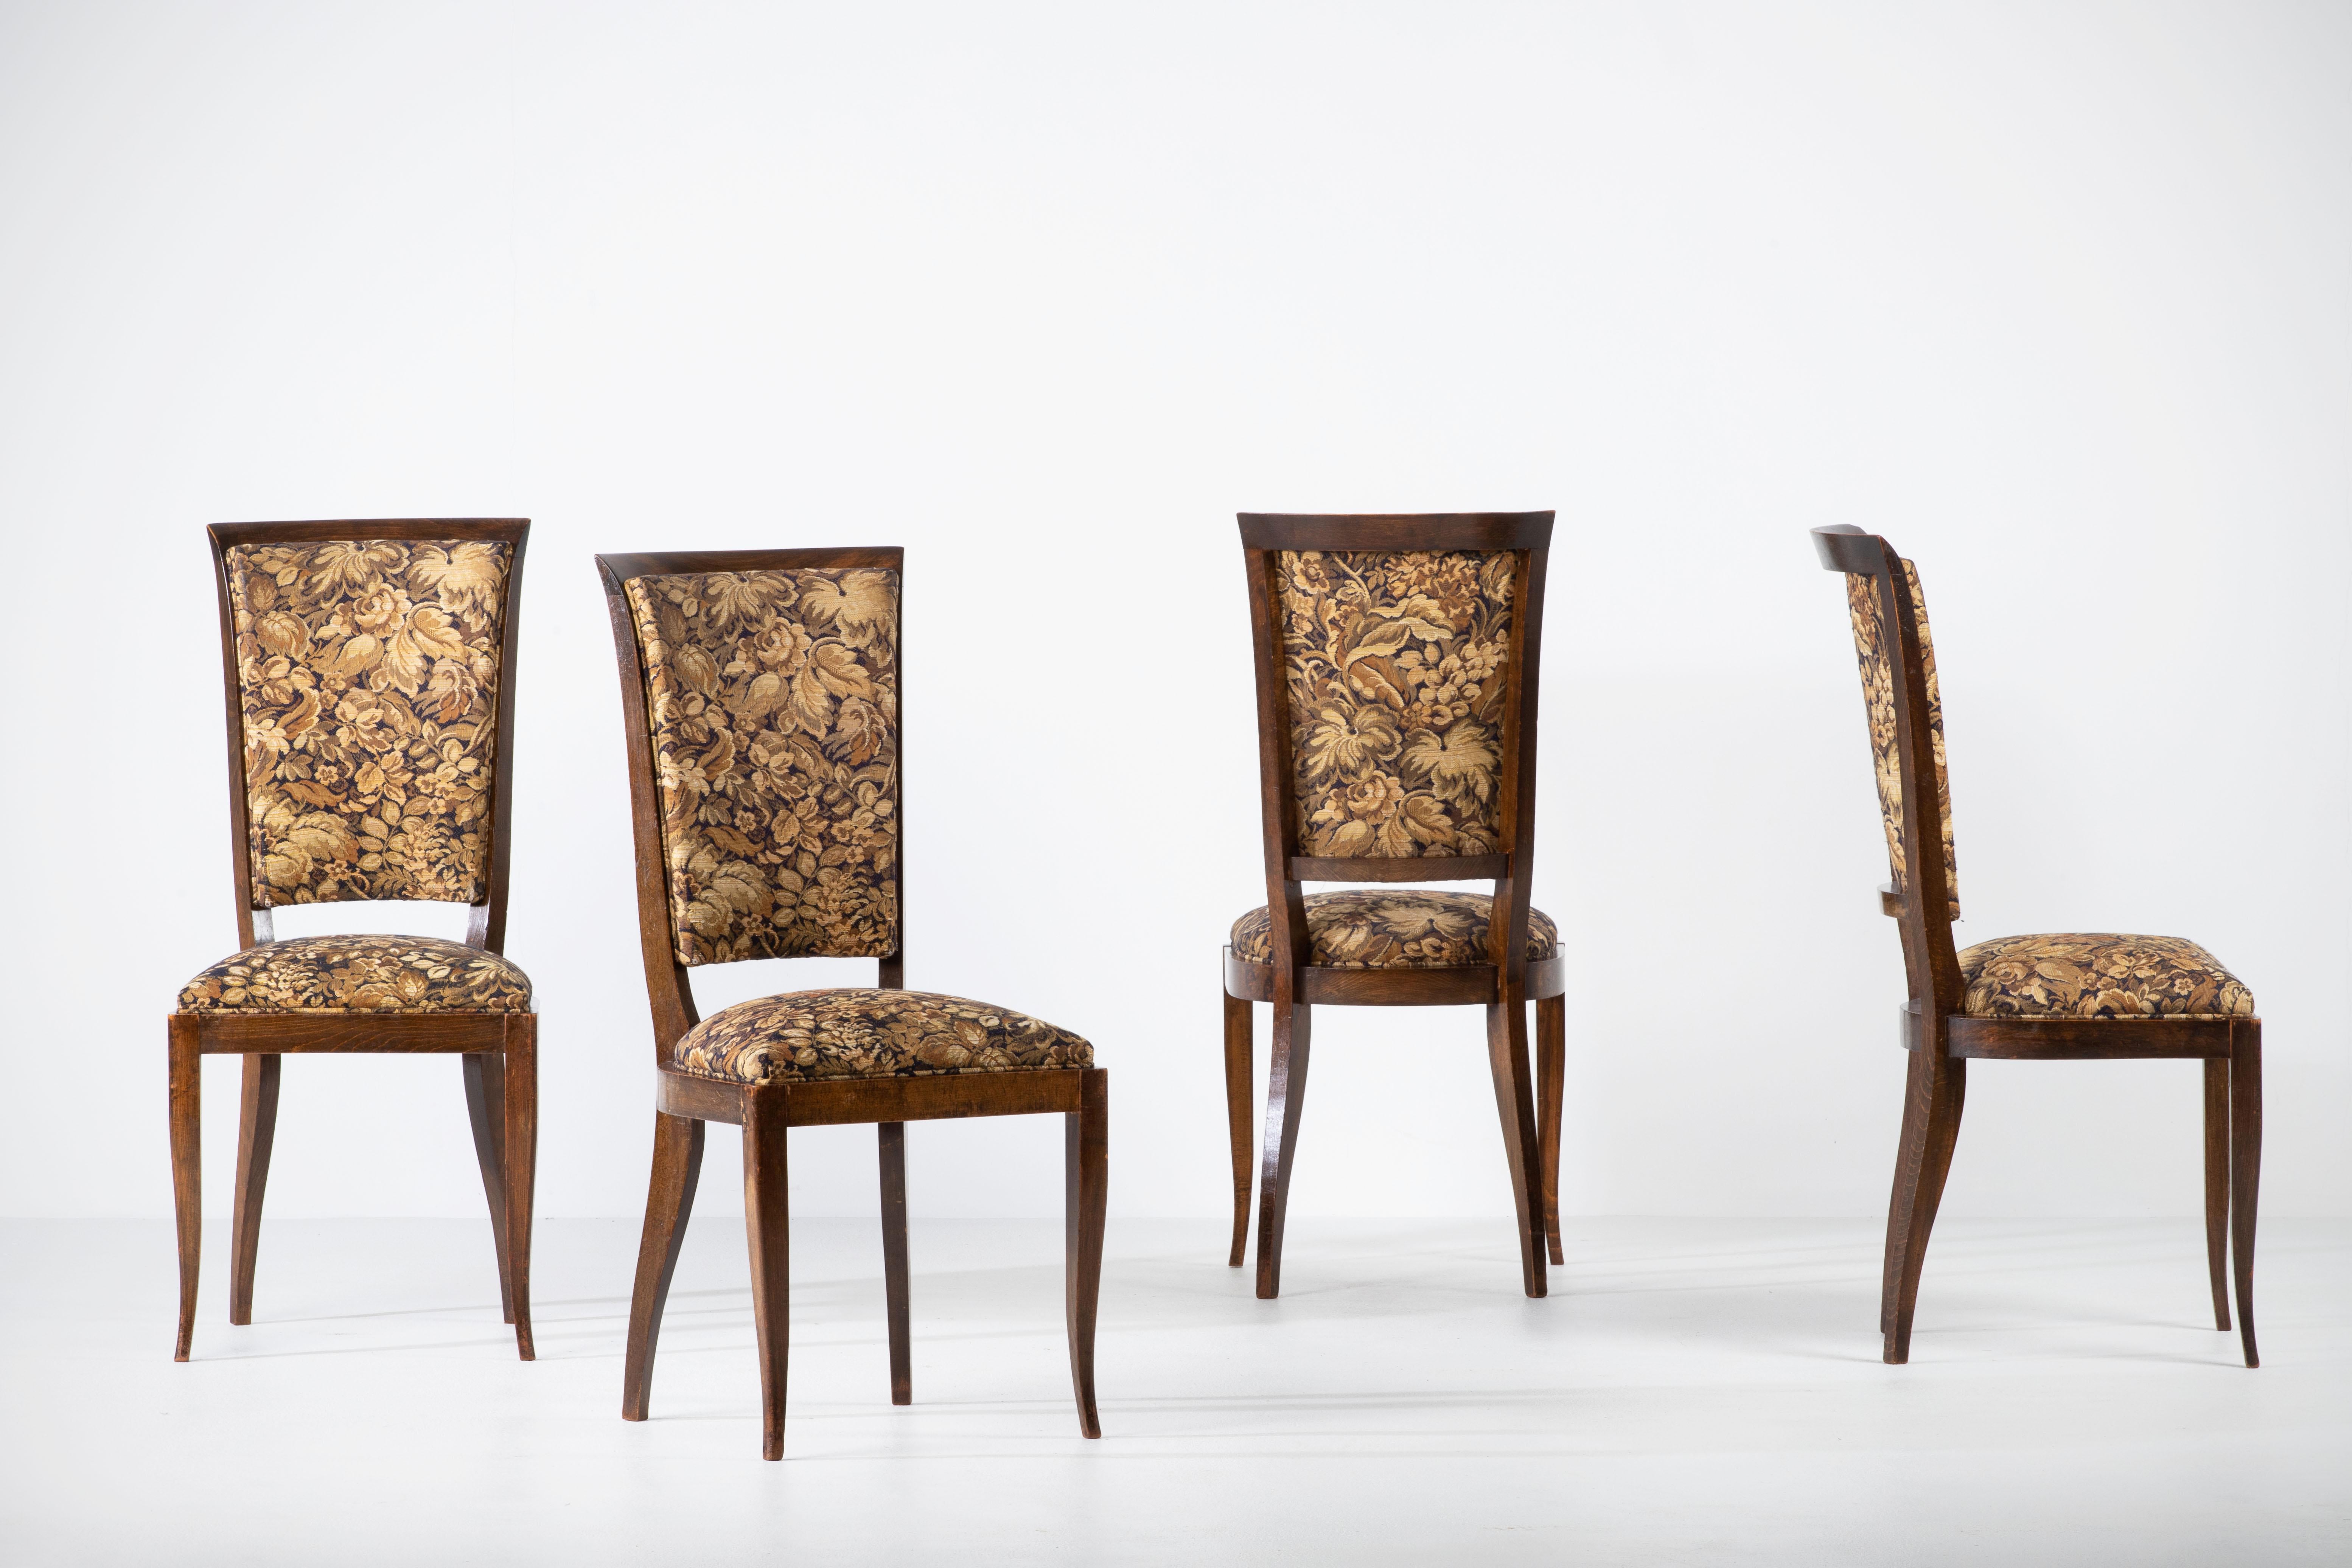 Ensemble de quatre chaises de salle à manger Art déco, Charles Dudouyt, années 1940, France.

On y voit clairement le travail de l'école française des années 1940. Les panneaux de dossier au design détaillé répondront aux normes des intérieurs les